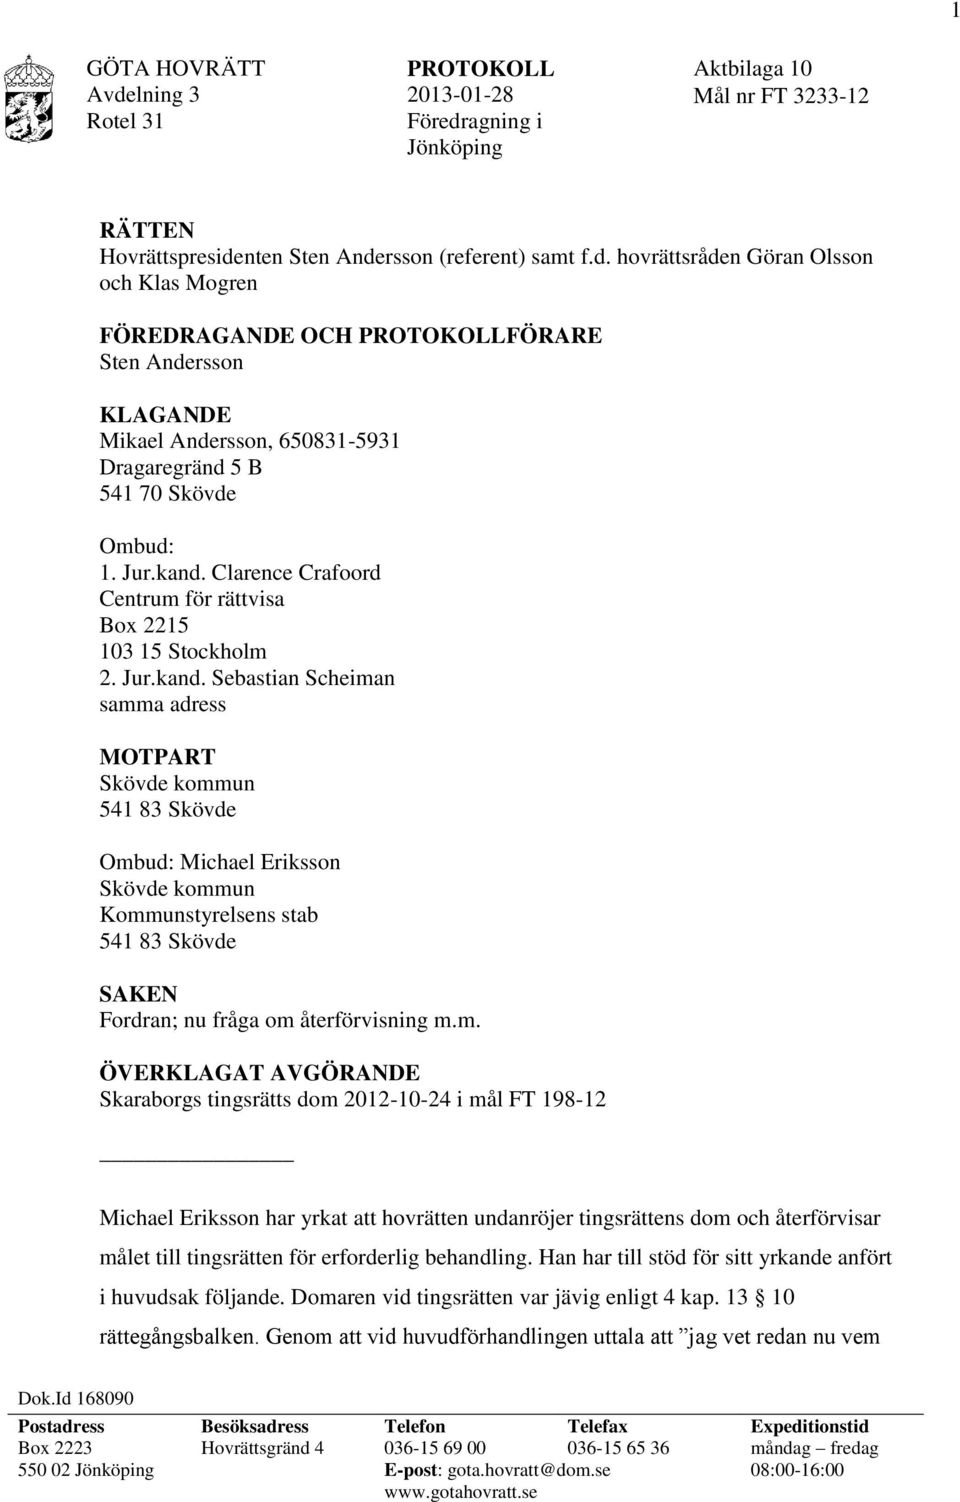 m. ÖVERKLAGAT AVGÖRANDE Skaraborgs tingsrätts dom 2012-10-24 i mål FT 198-12 Michael Eriksson har yrkat att hovrätten undanröjer tingsrättens dom och återförvisar målet till tingsrätten för